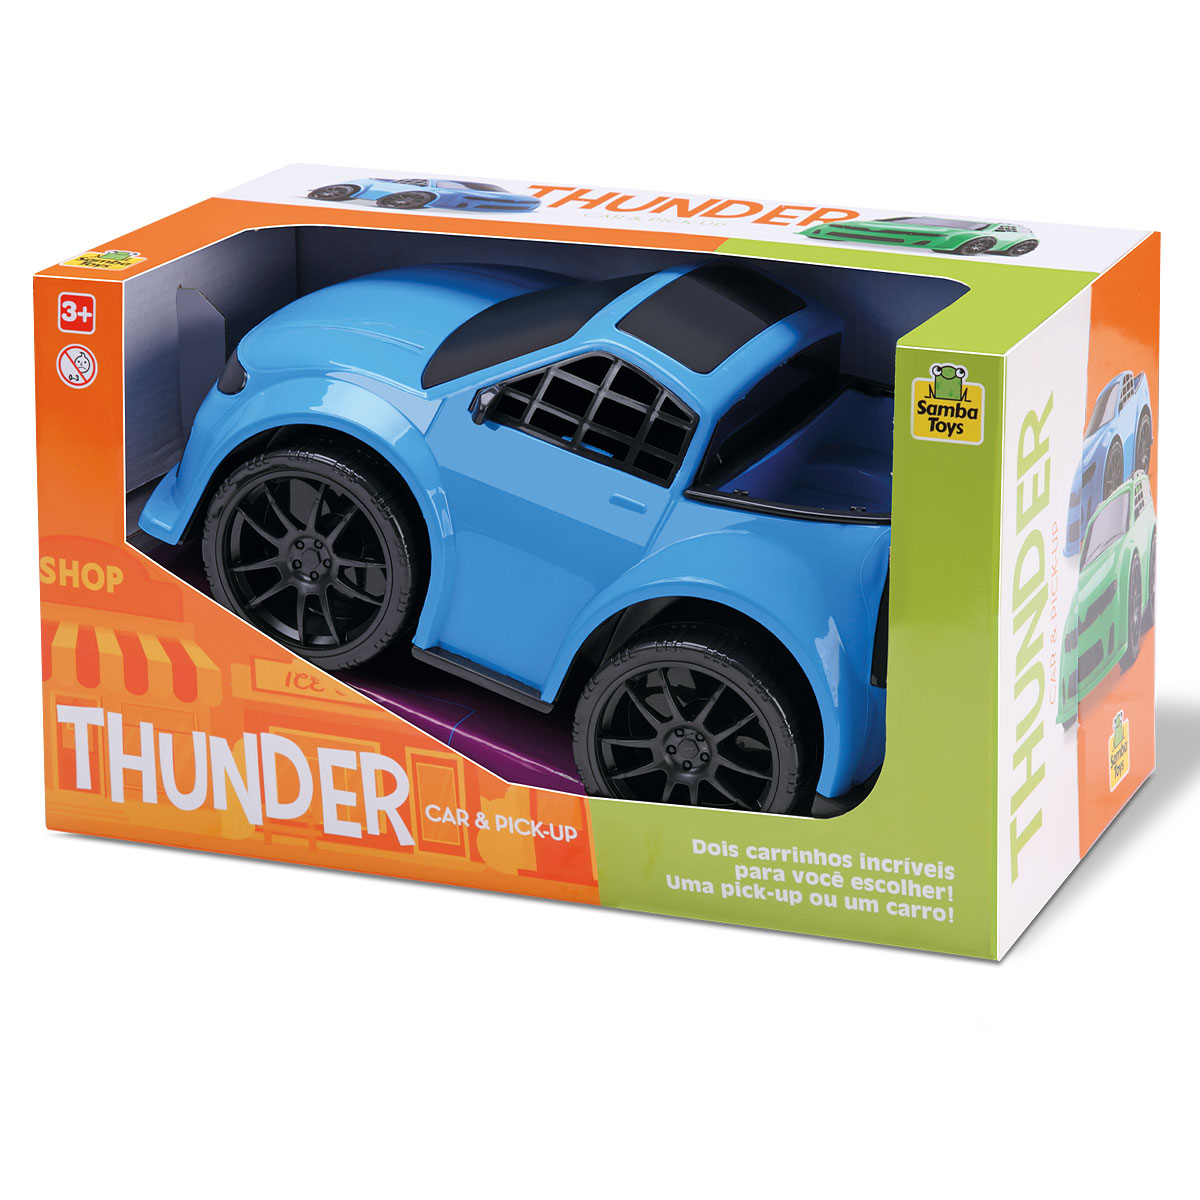 Thunder Car & Pickup